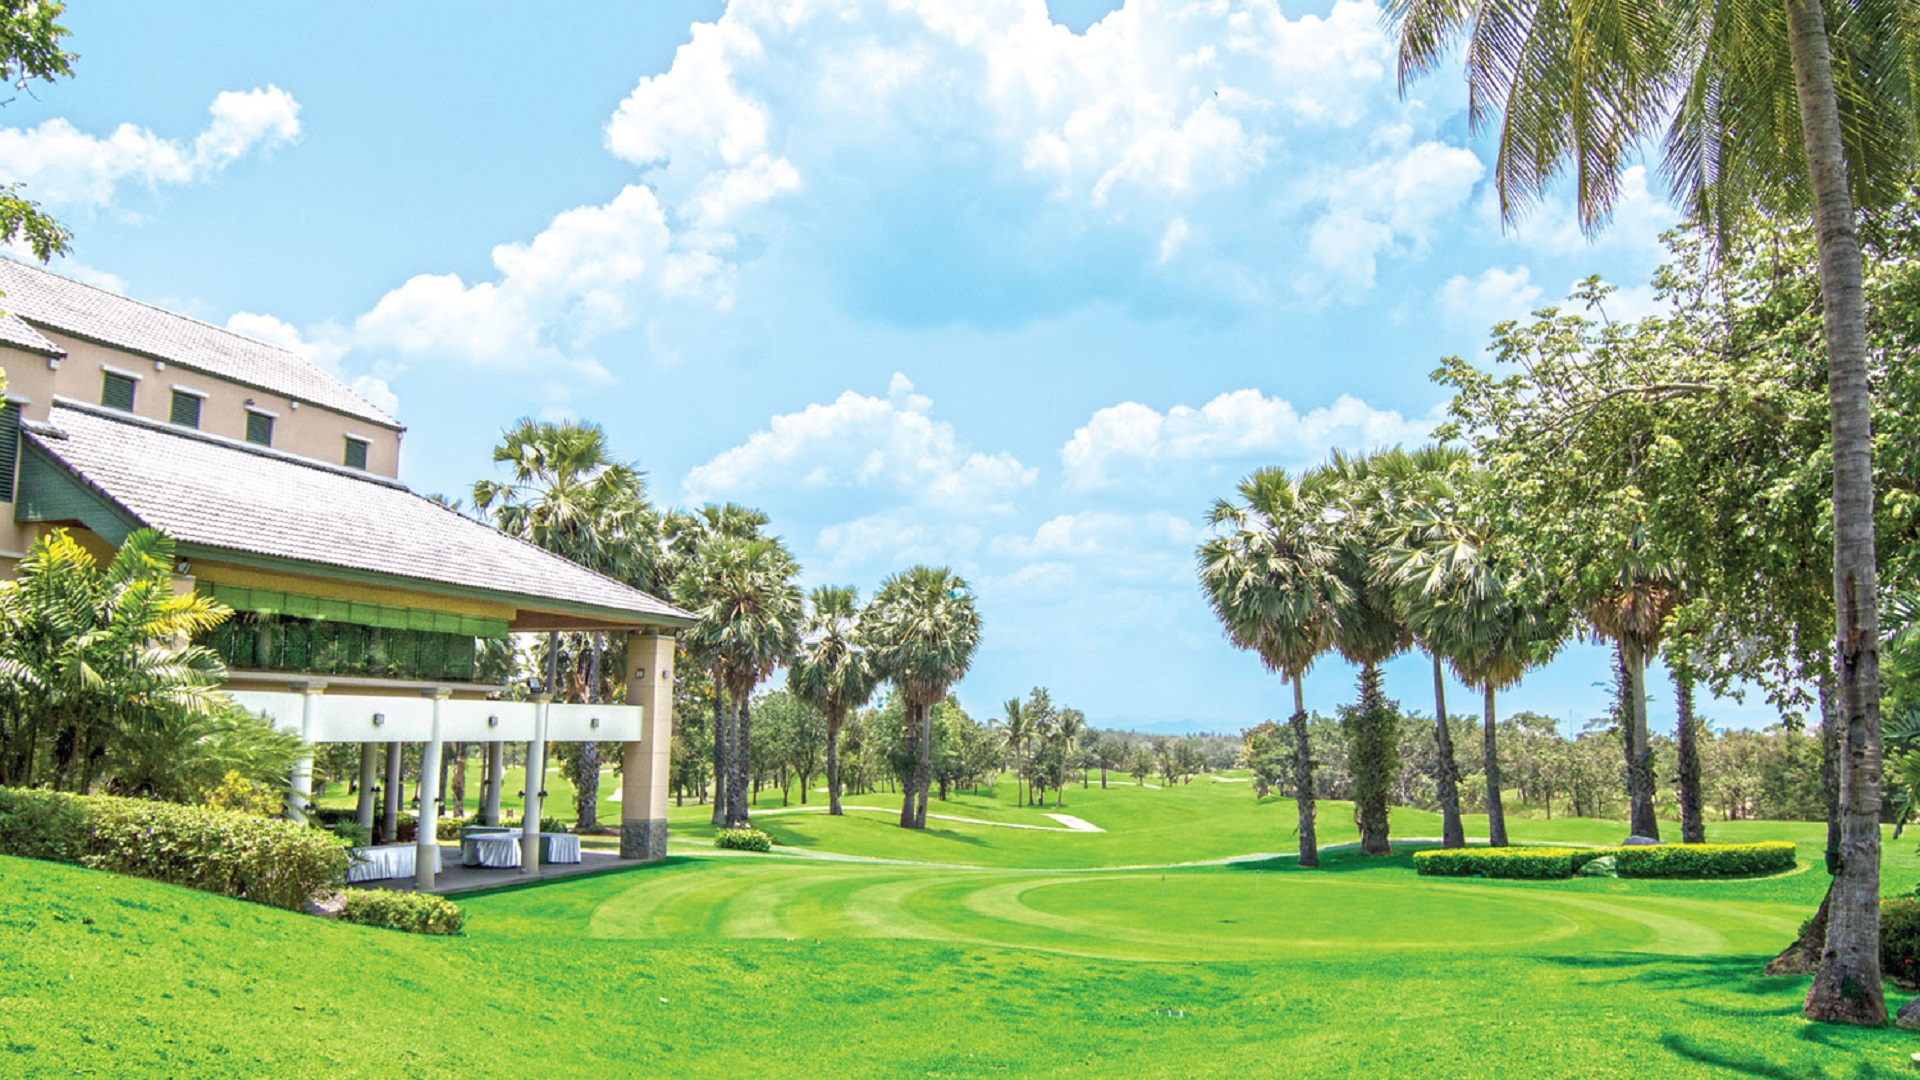 Find et golflignende landskab hos Imperial Lake View Resort i Hua Hin. Omgivet af palm træer og frodig grøn græs, tilbyder dette resort en